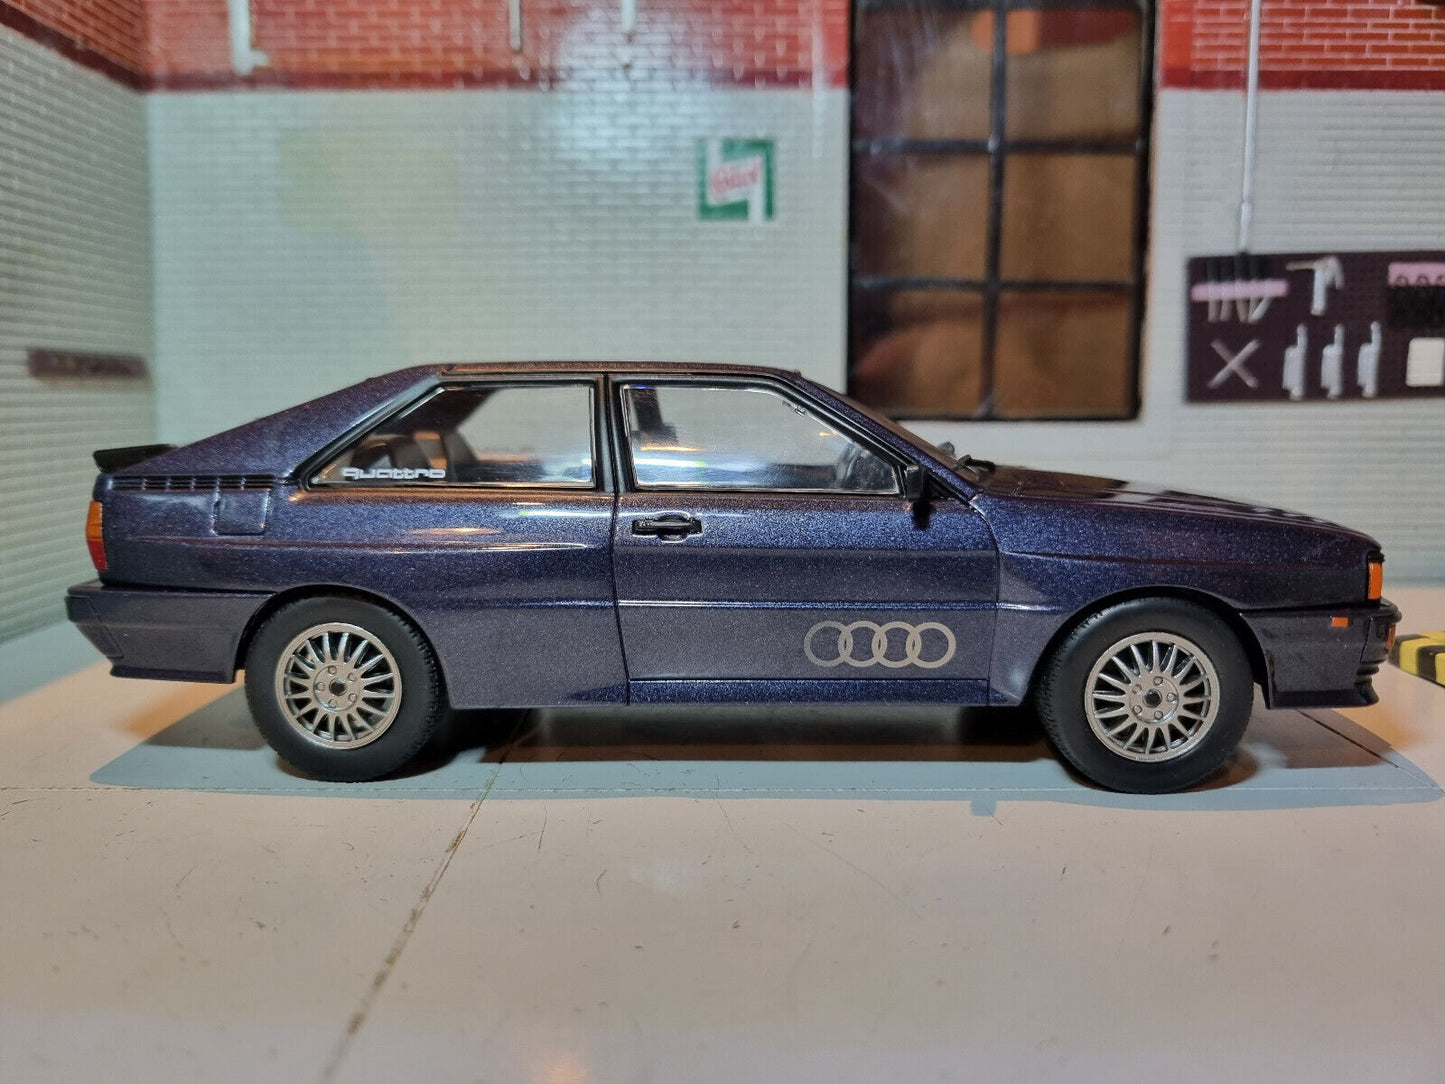 Audi 1981 Quattro 124102 Whitebox 1:24